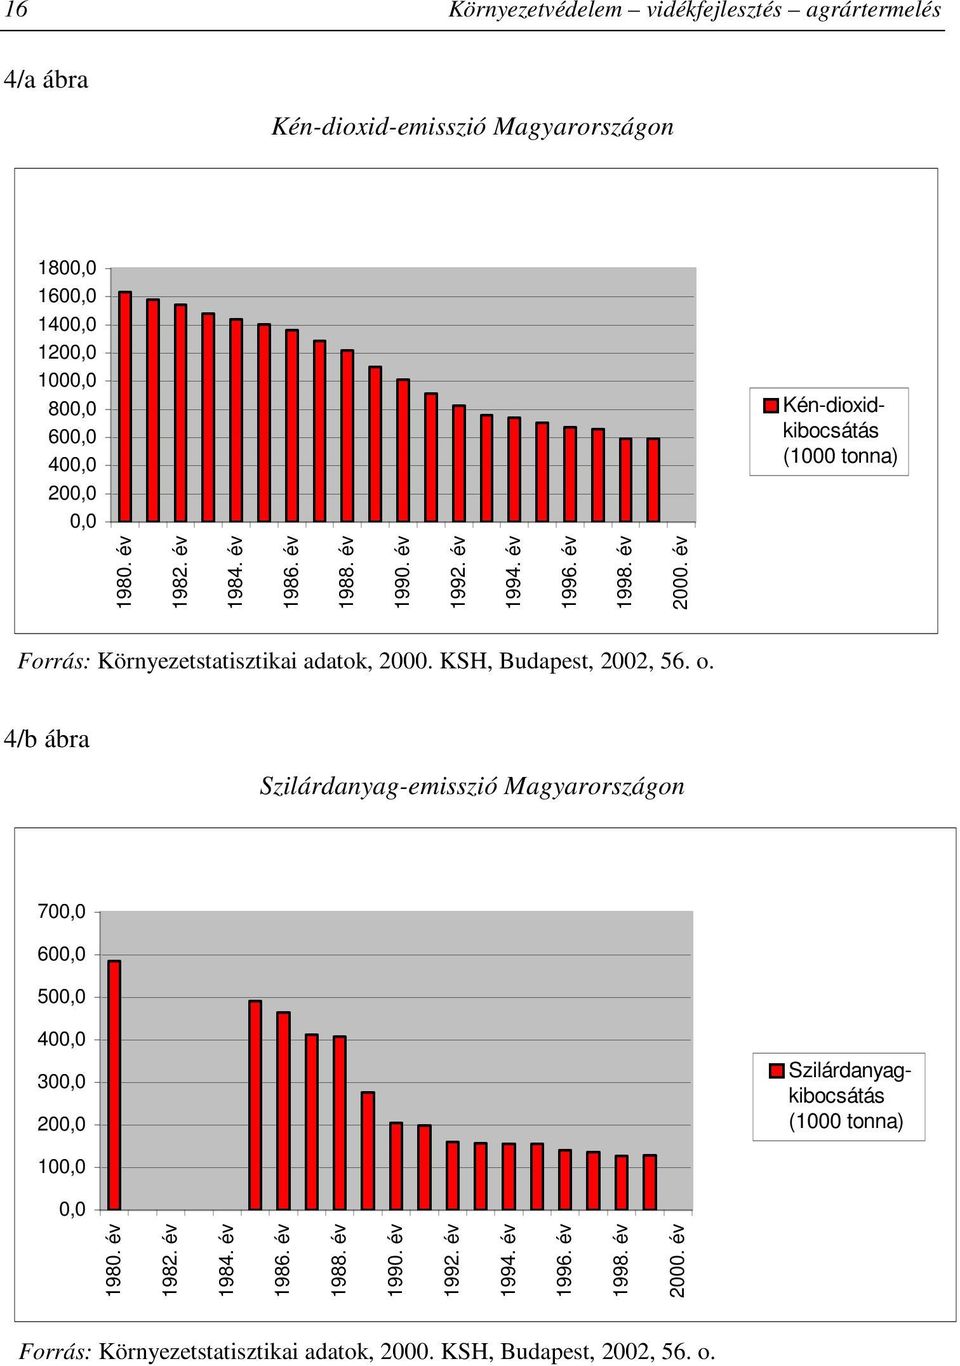 év Forrás: Környezetstatisztikai adatok, 2000. KSH, Budapest, 2002, 56. o.